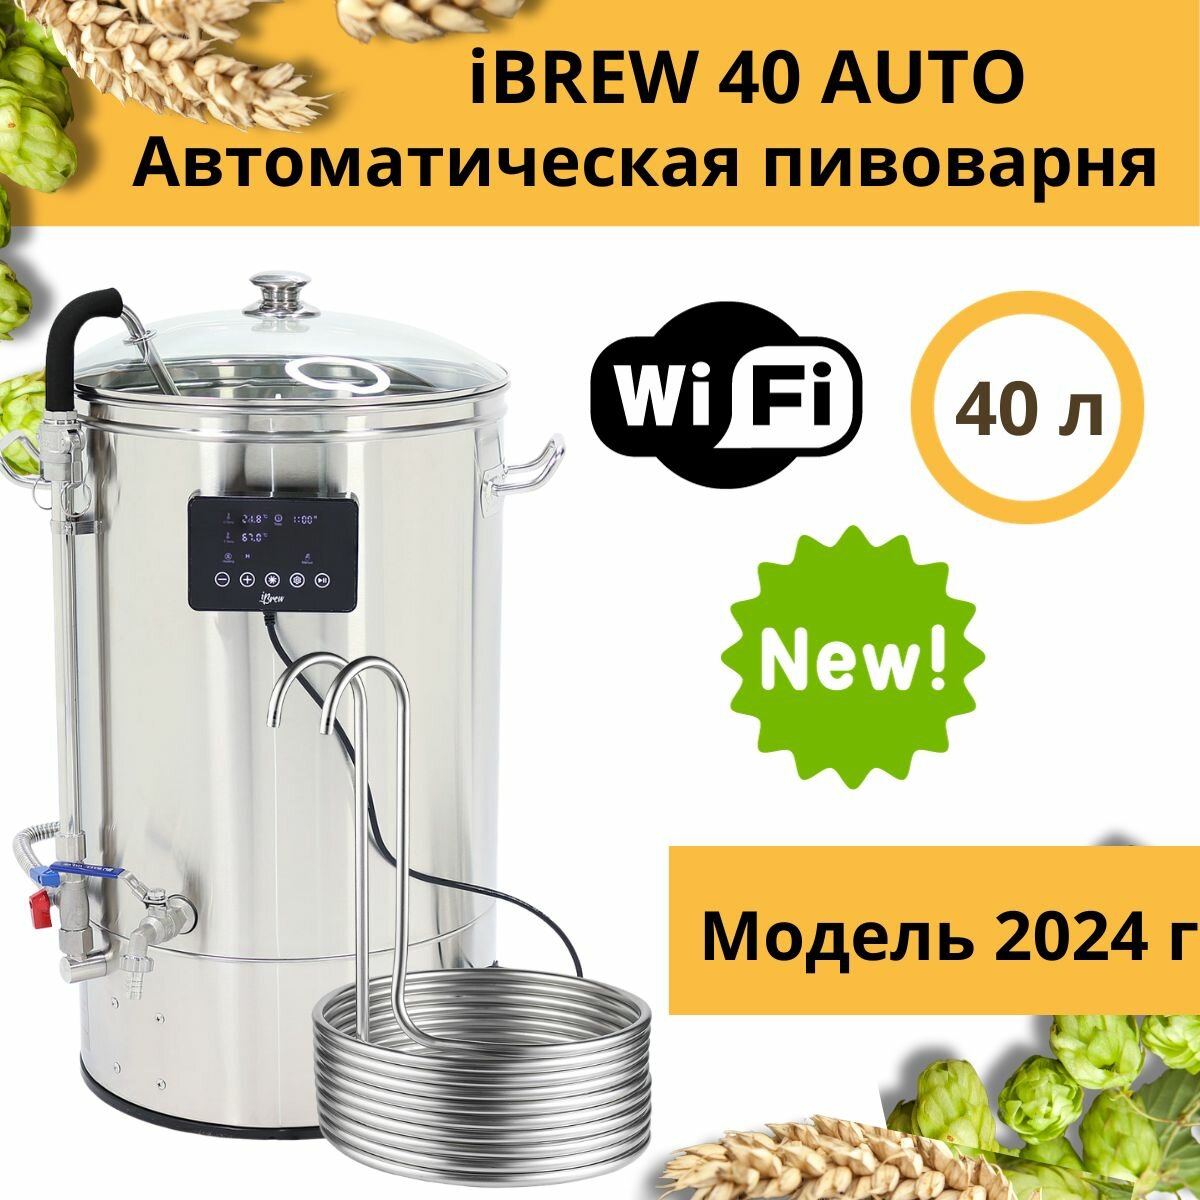 Автоматическая домашняя пивоварня сусловарня iBrew 40 Auto с чиллером, модель 2024 года с WIFI